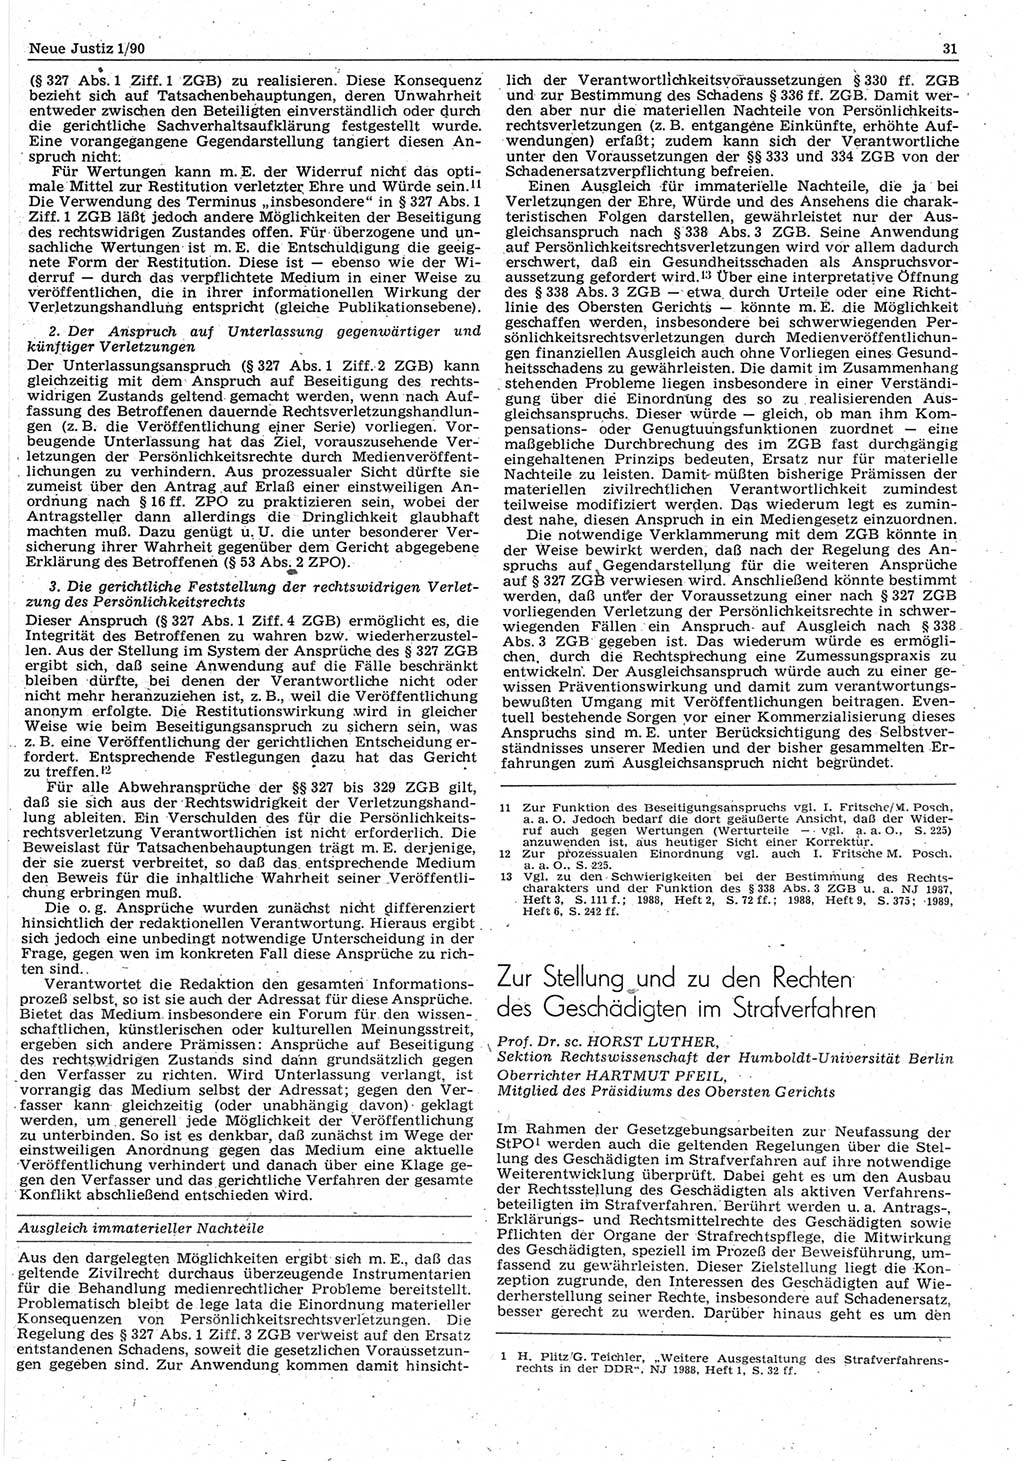 Neue Justiz (NJ), Zeitschrift für Rechtsetzung und Rechtsanwendung [Deutsche Demokratische Republik (DDR)], 44. Jahrgang 1990, Seite 31 (NJ DDR 1990, S. 31)